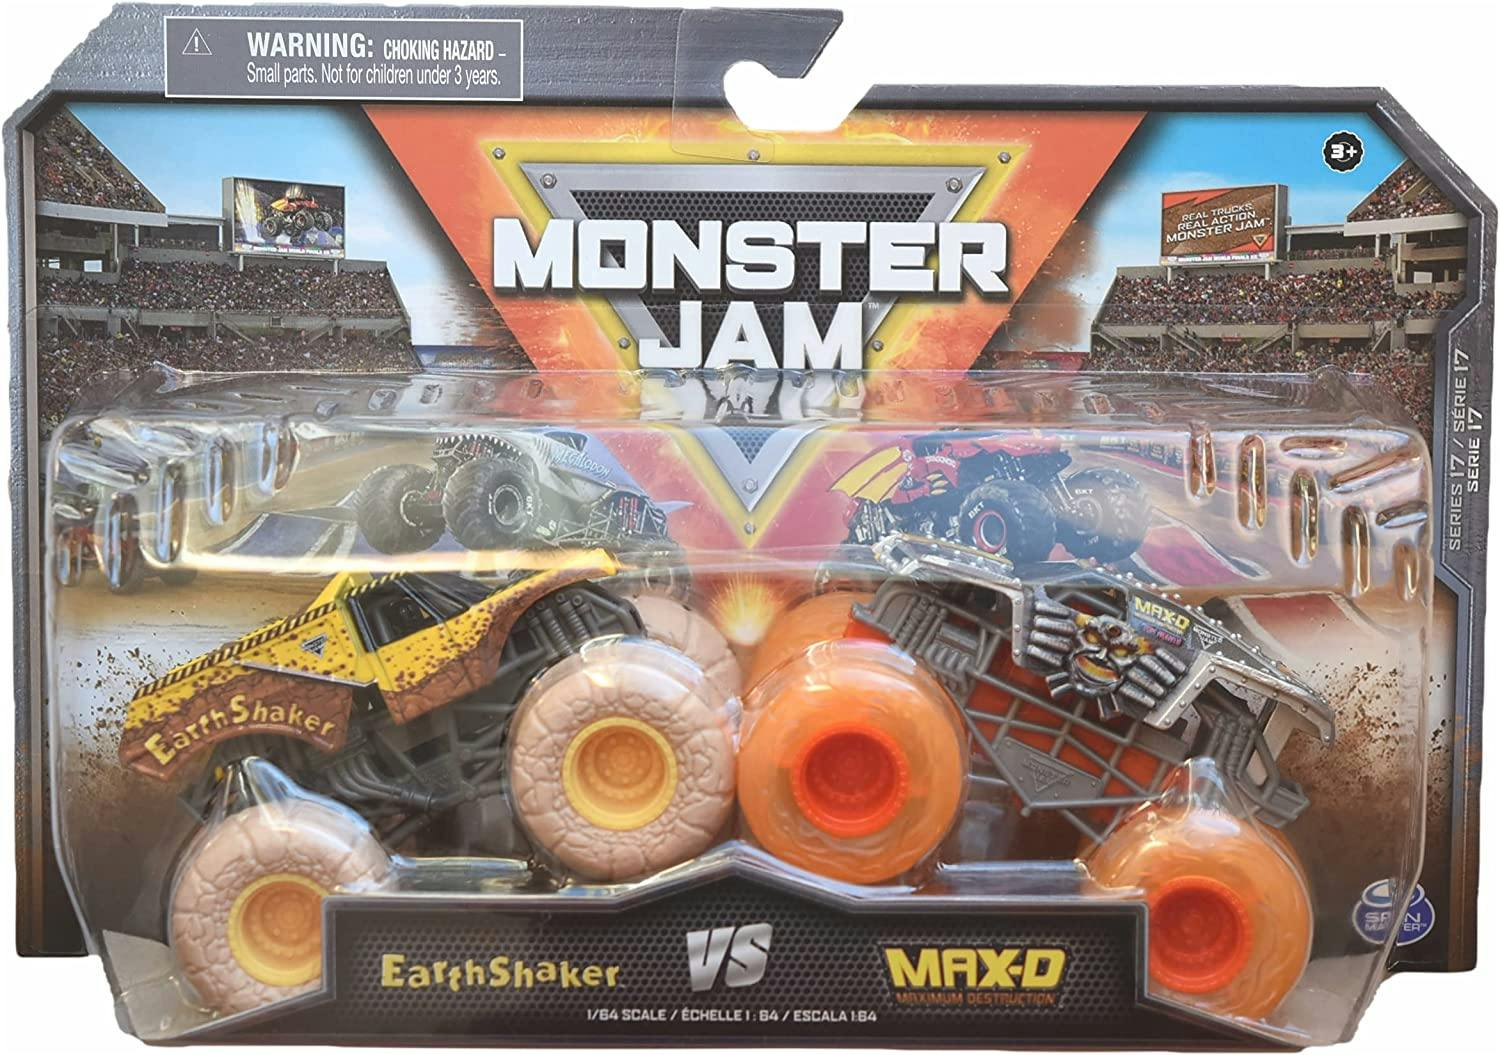 Monster Jam 2 pack Earth Shaker vs. Max-D, 1:64